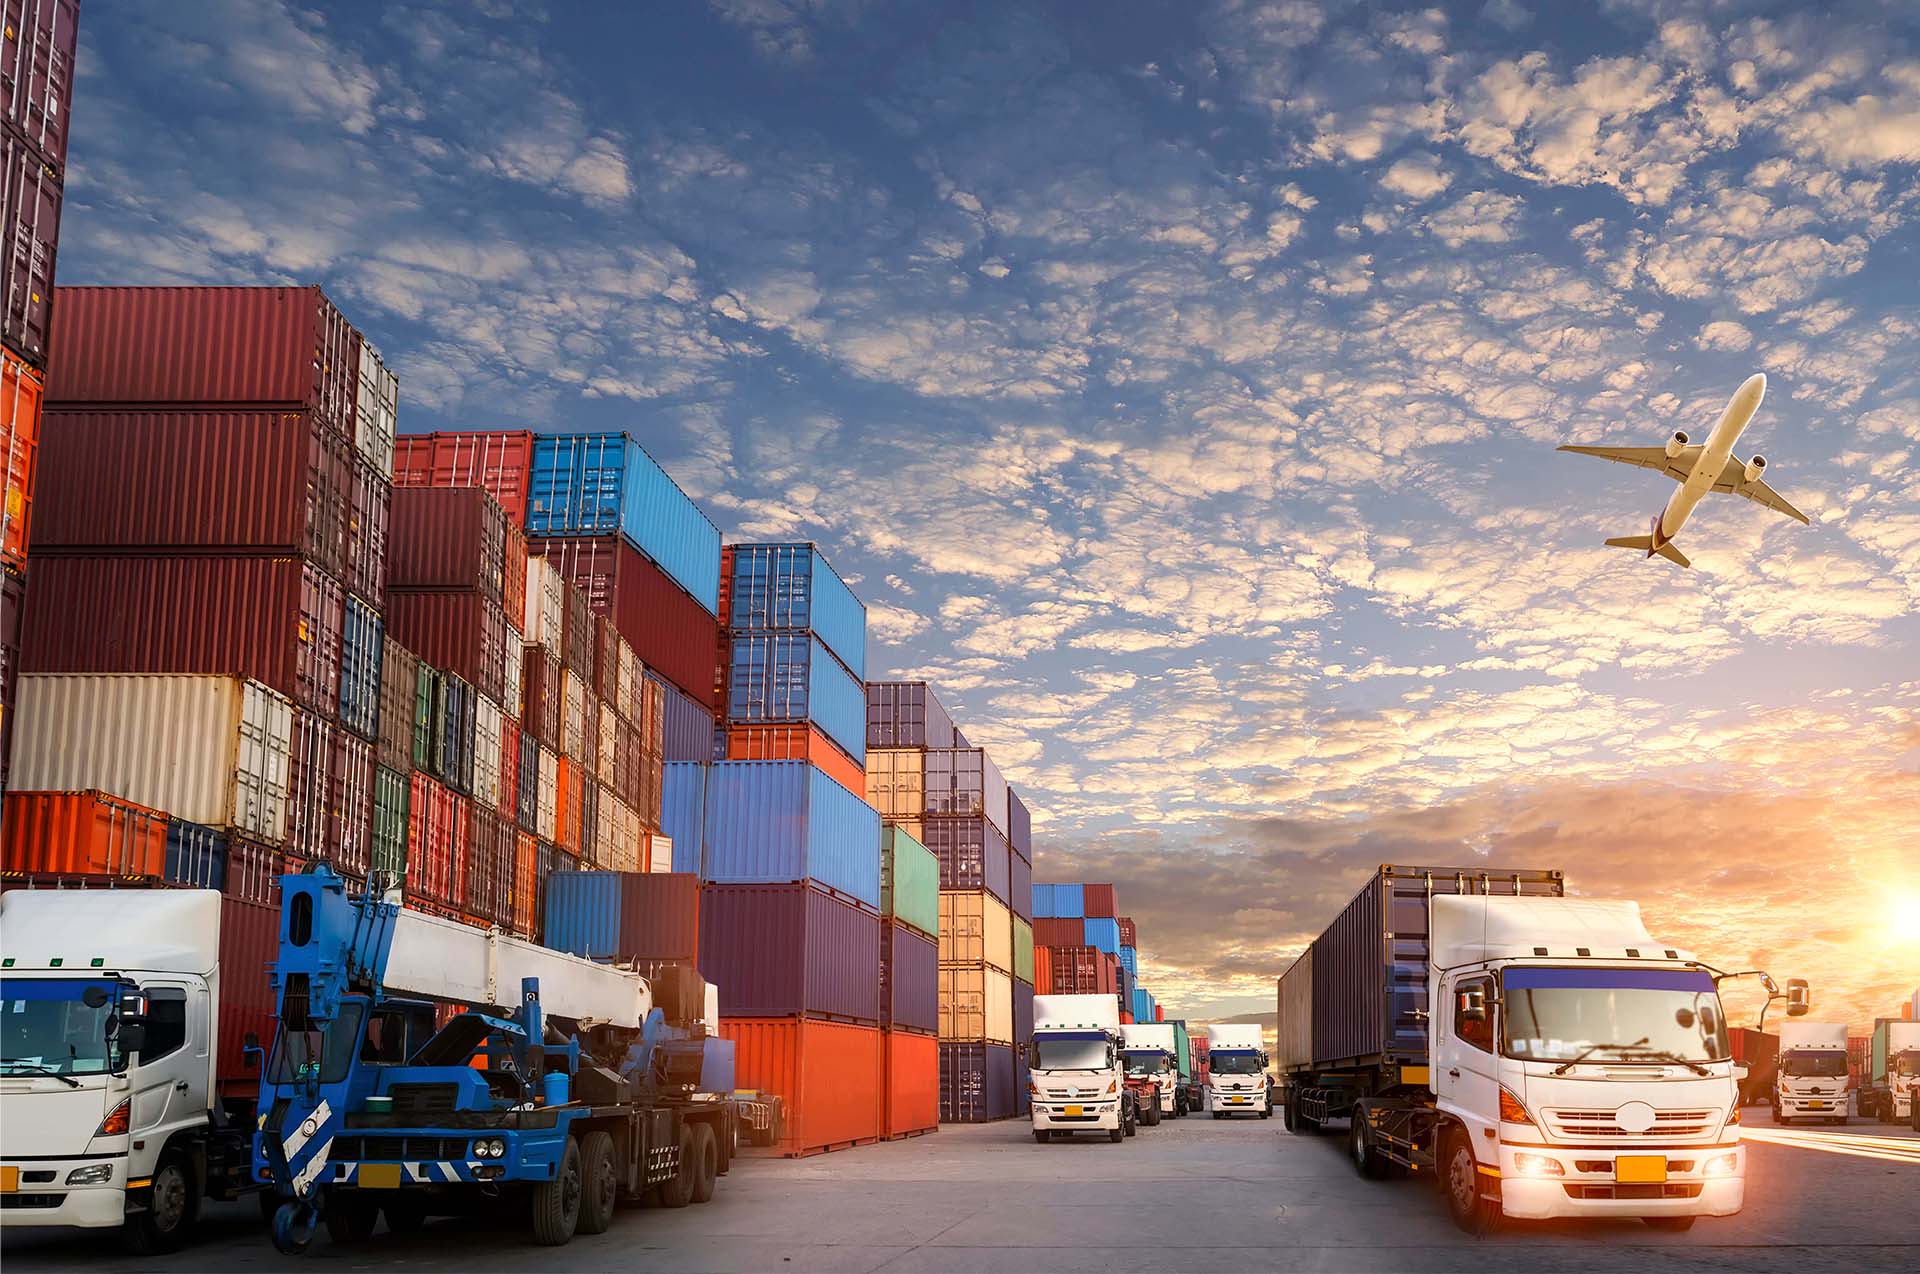 Export Preview  Digital Logistics Capacity Assessments